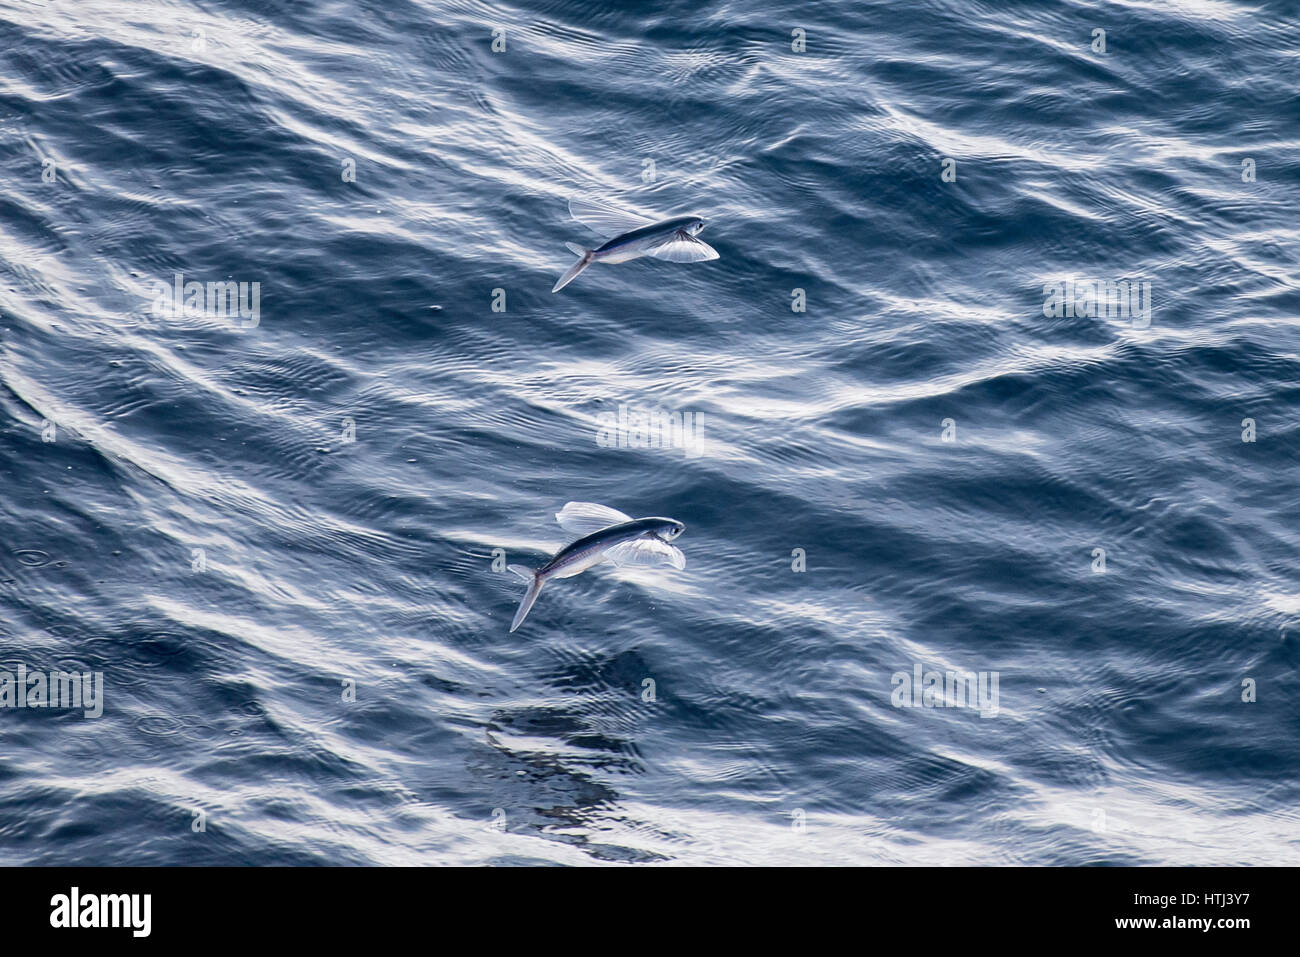 La escuela, shoal o grupo de peces voladores, en el aire, fuera de Mauritania, el Norte de África, Océano Atlántico Norte Foto de stock